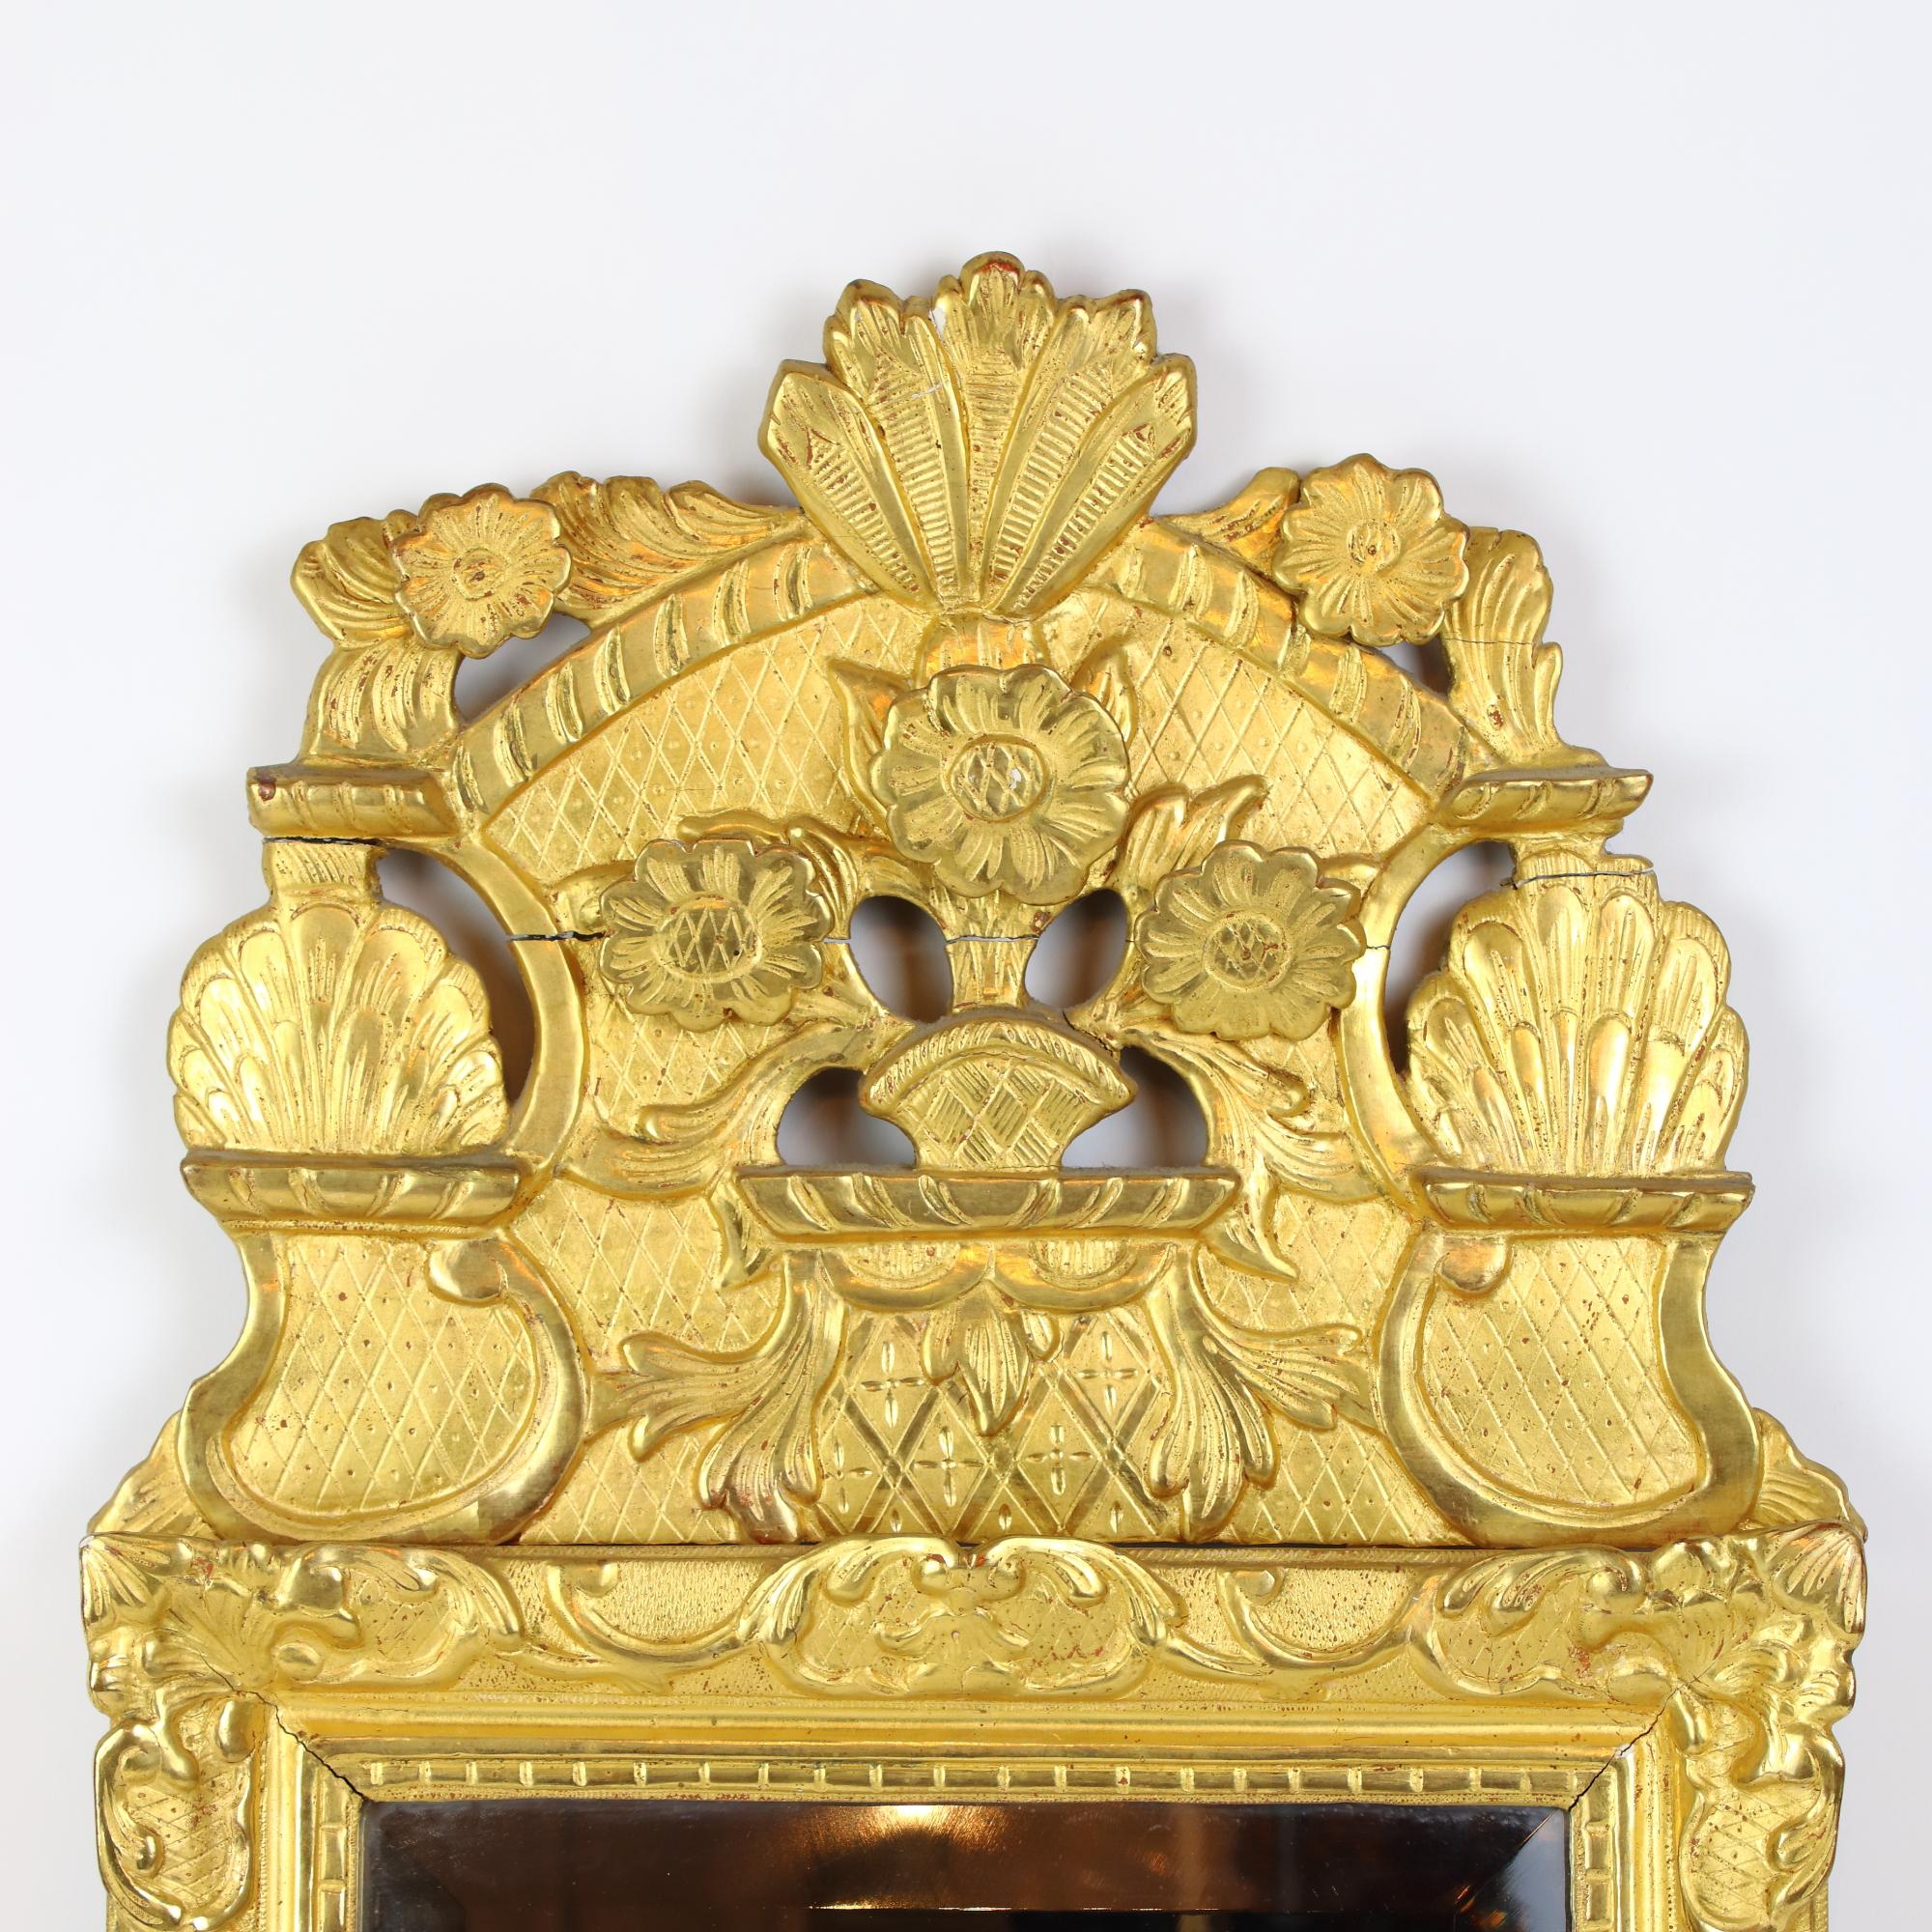 Miroir en bois doré à décor floral de Régence, début du XVIIIe siècle.

Miroir en bois doré de style Régence du début du XVIIIe siècle, contenant une glace rectangulaire (13,88 po x 11,02 po / 33,5 cm x 28 cm) dans un cadre en bois doré orné d'une